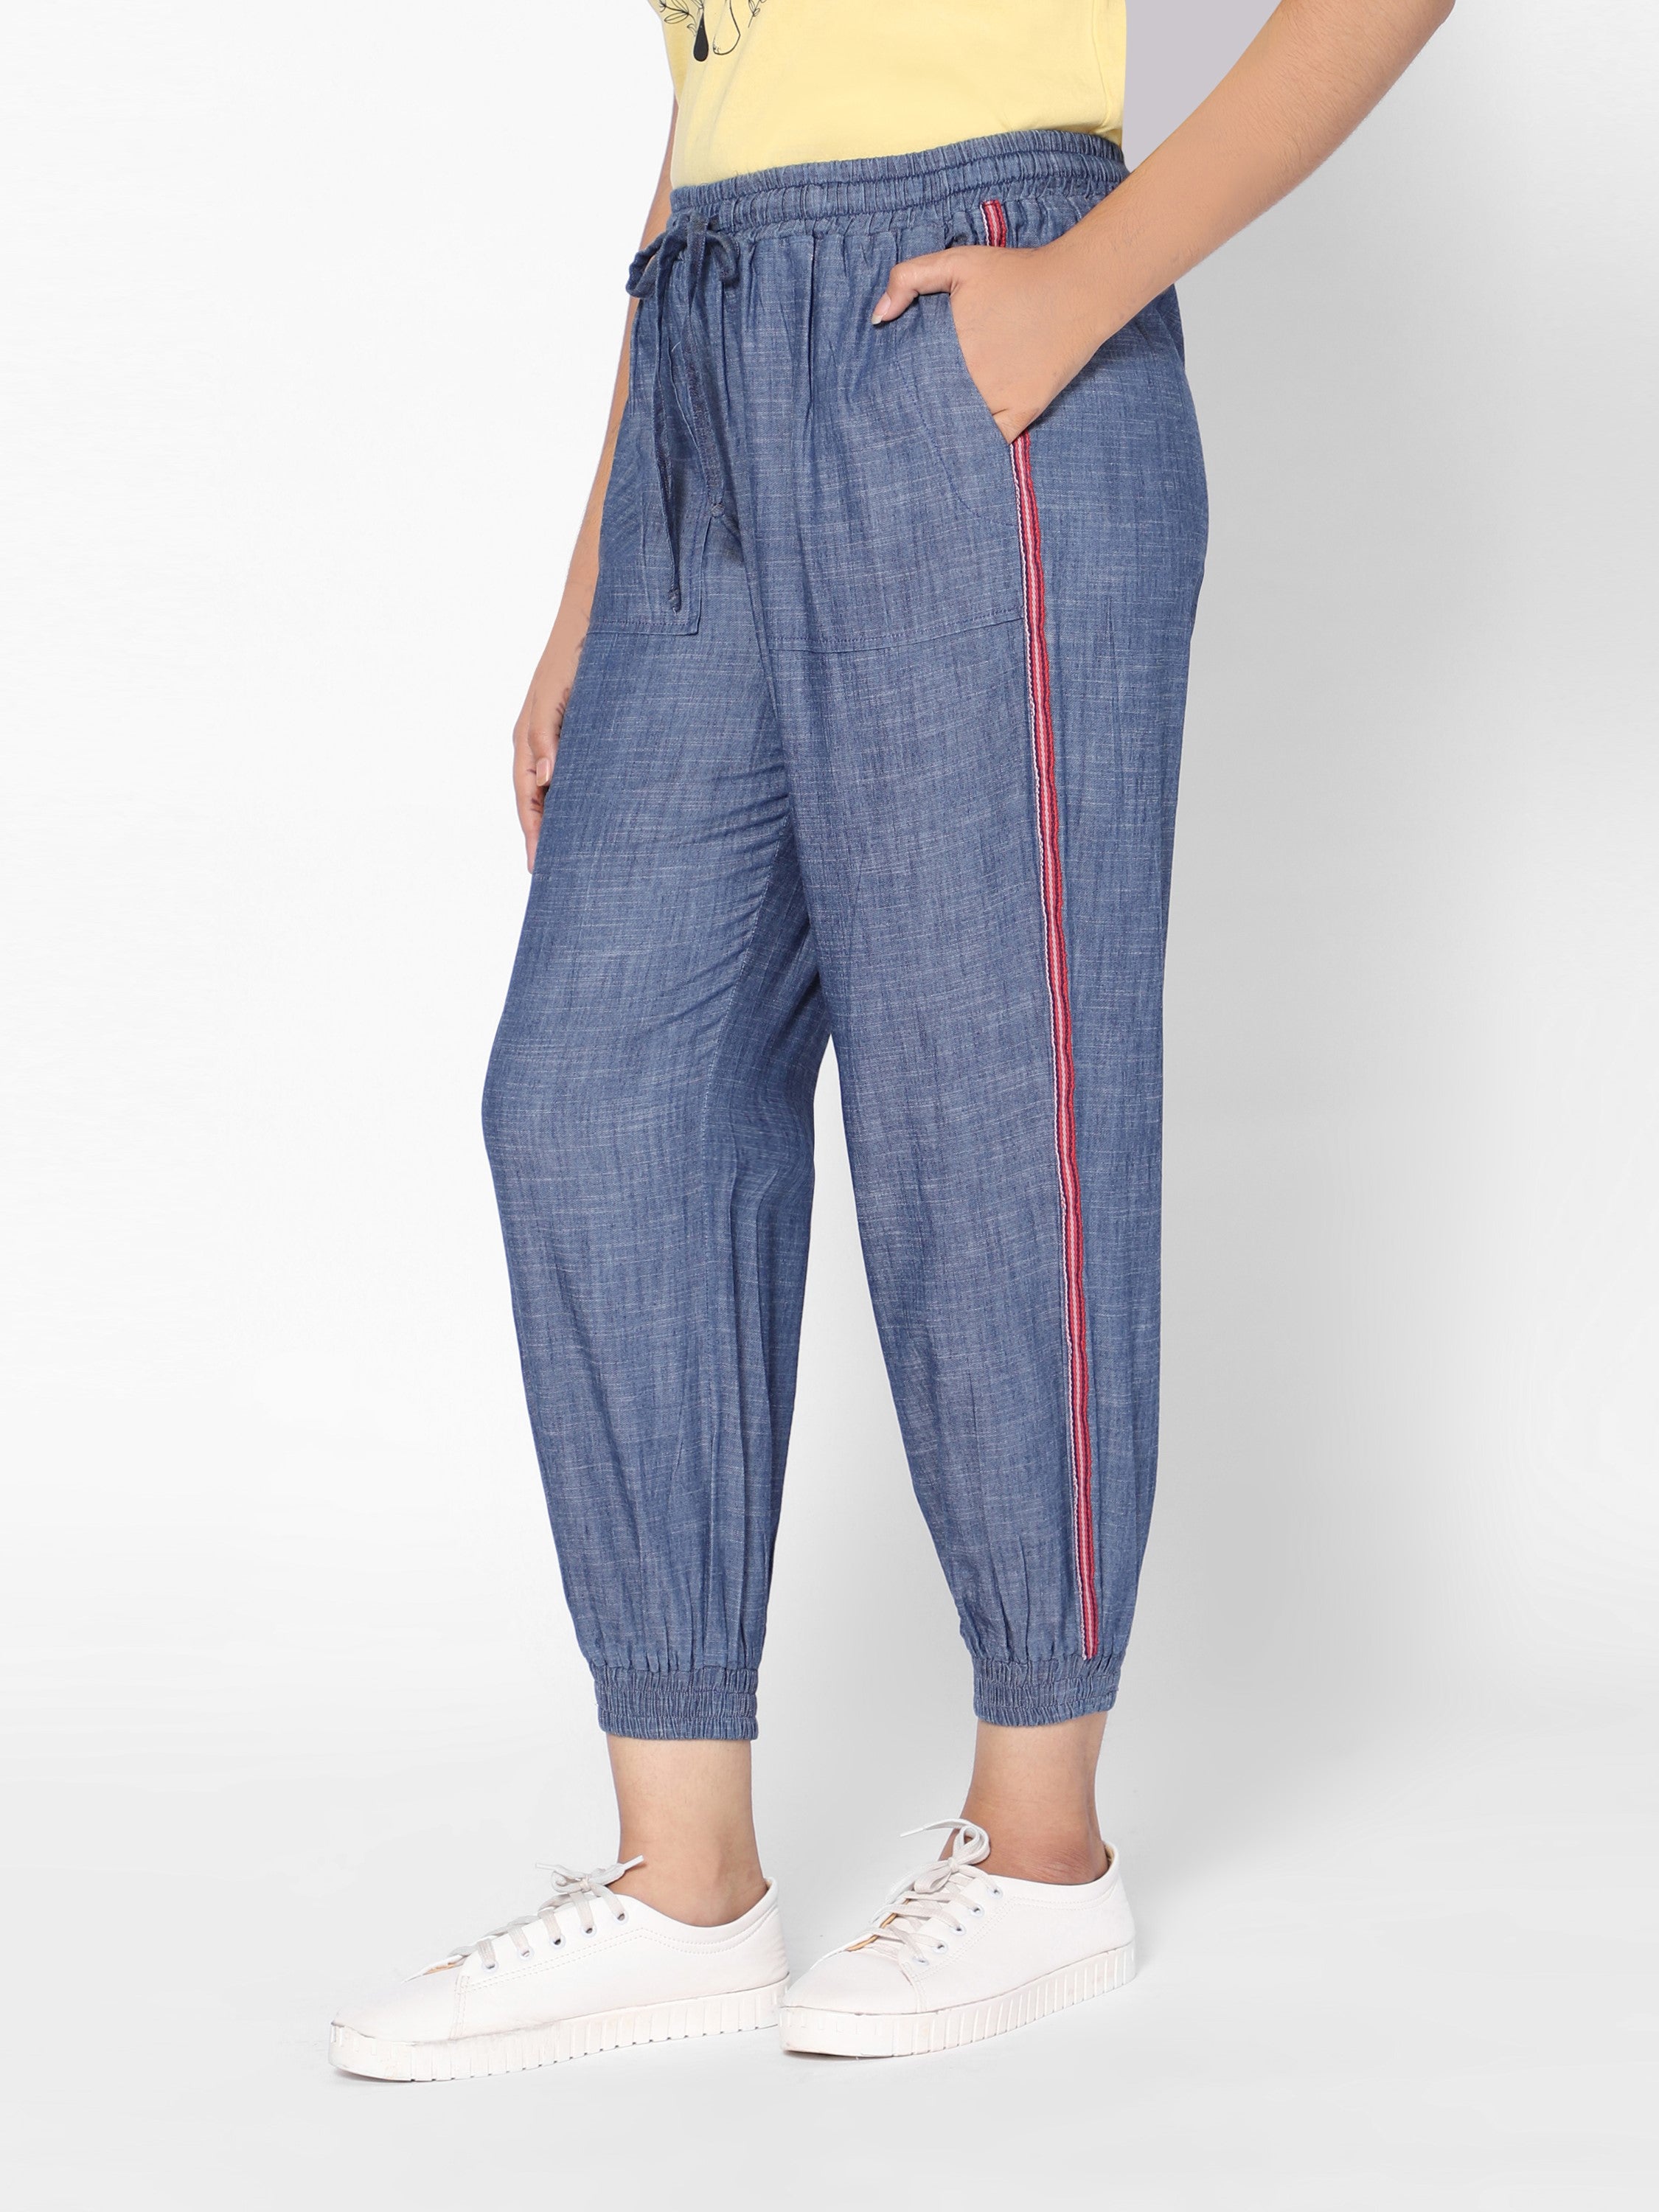 Buyr.com | Jeans | Lucky Brand Women's Denim Jogger, Ideal, 27 (US 4)